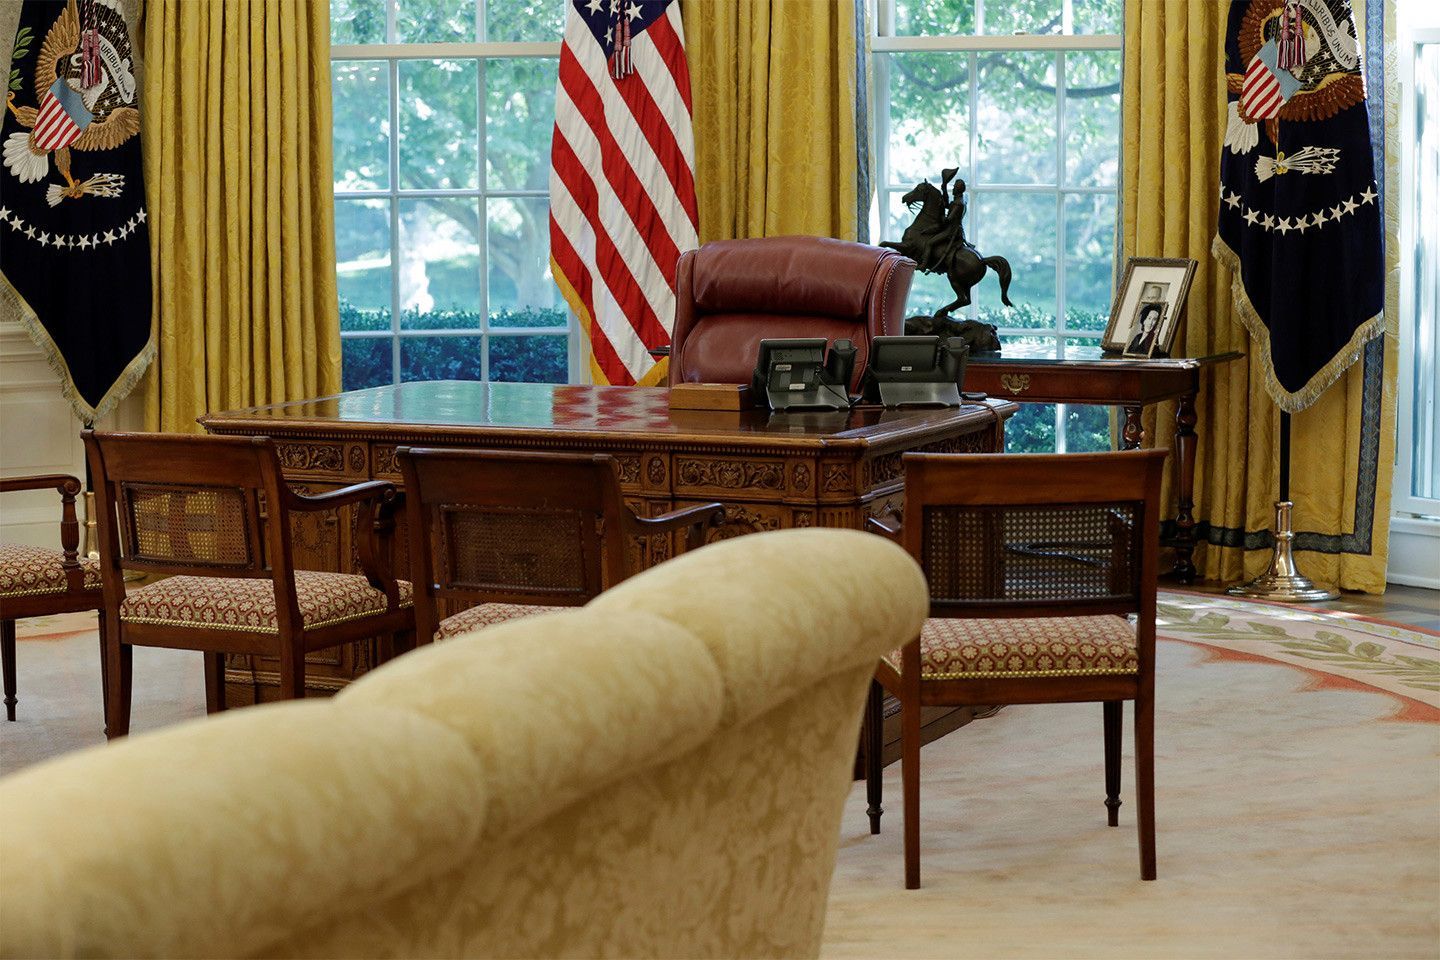 美白宫迷花150万元自家建“总统办公室”_博览_环球网